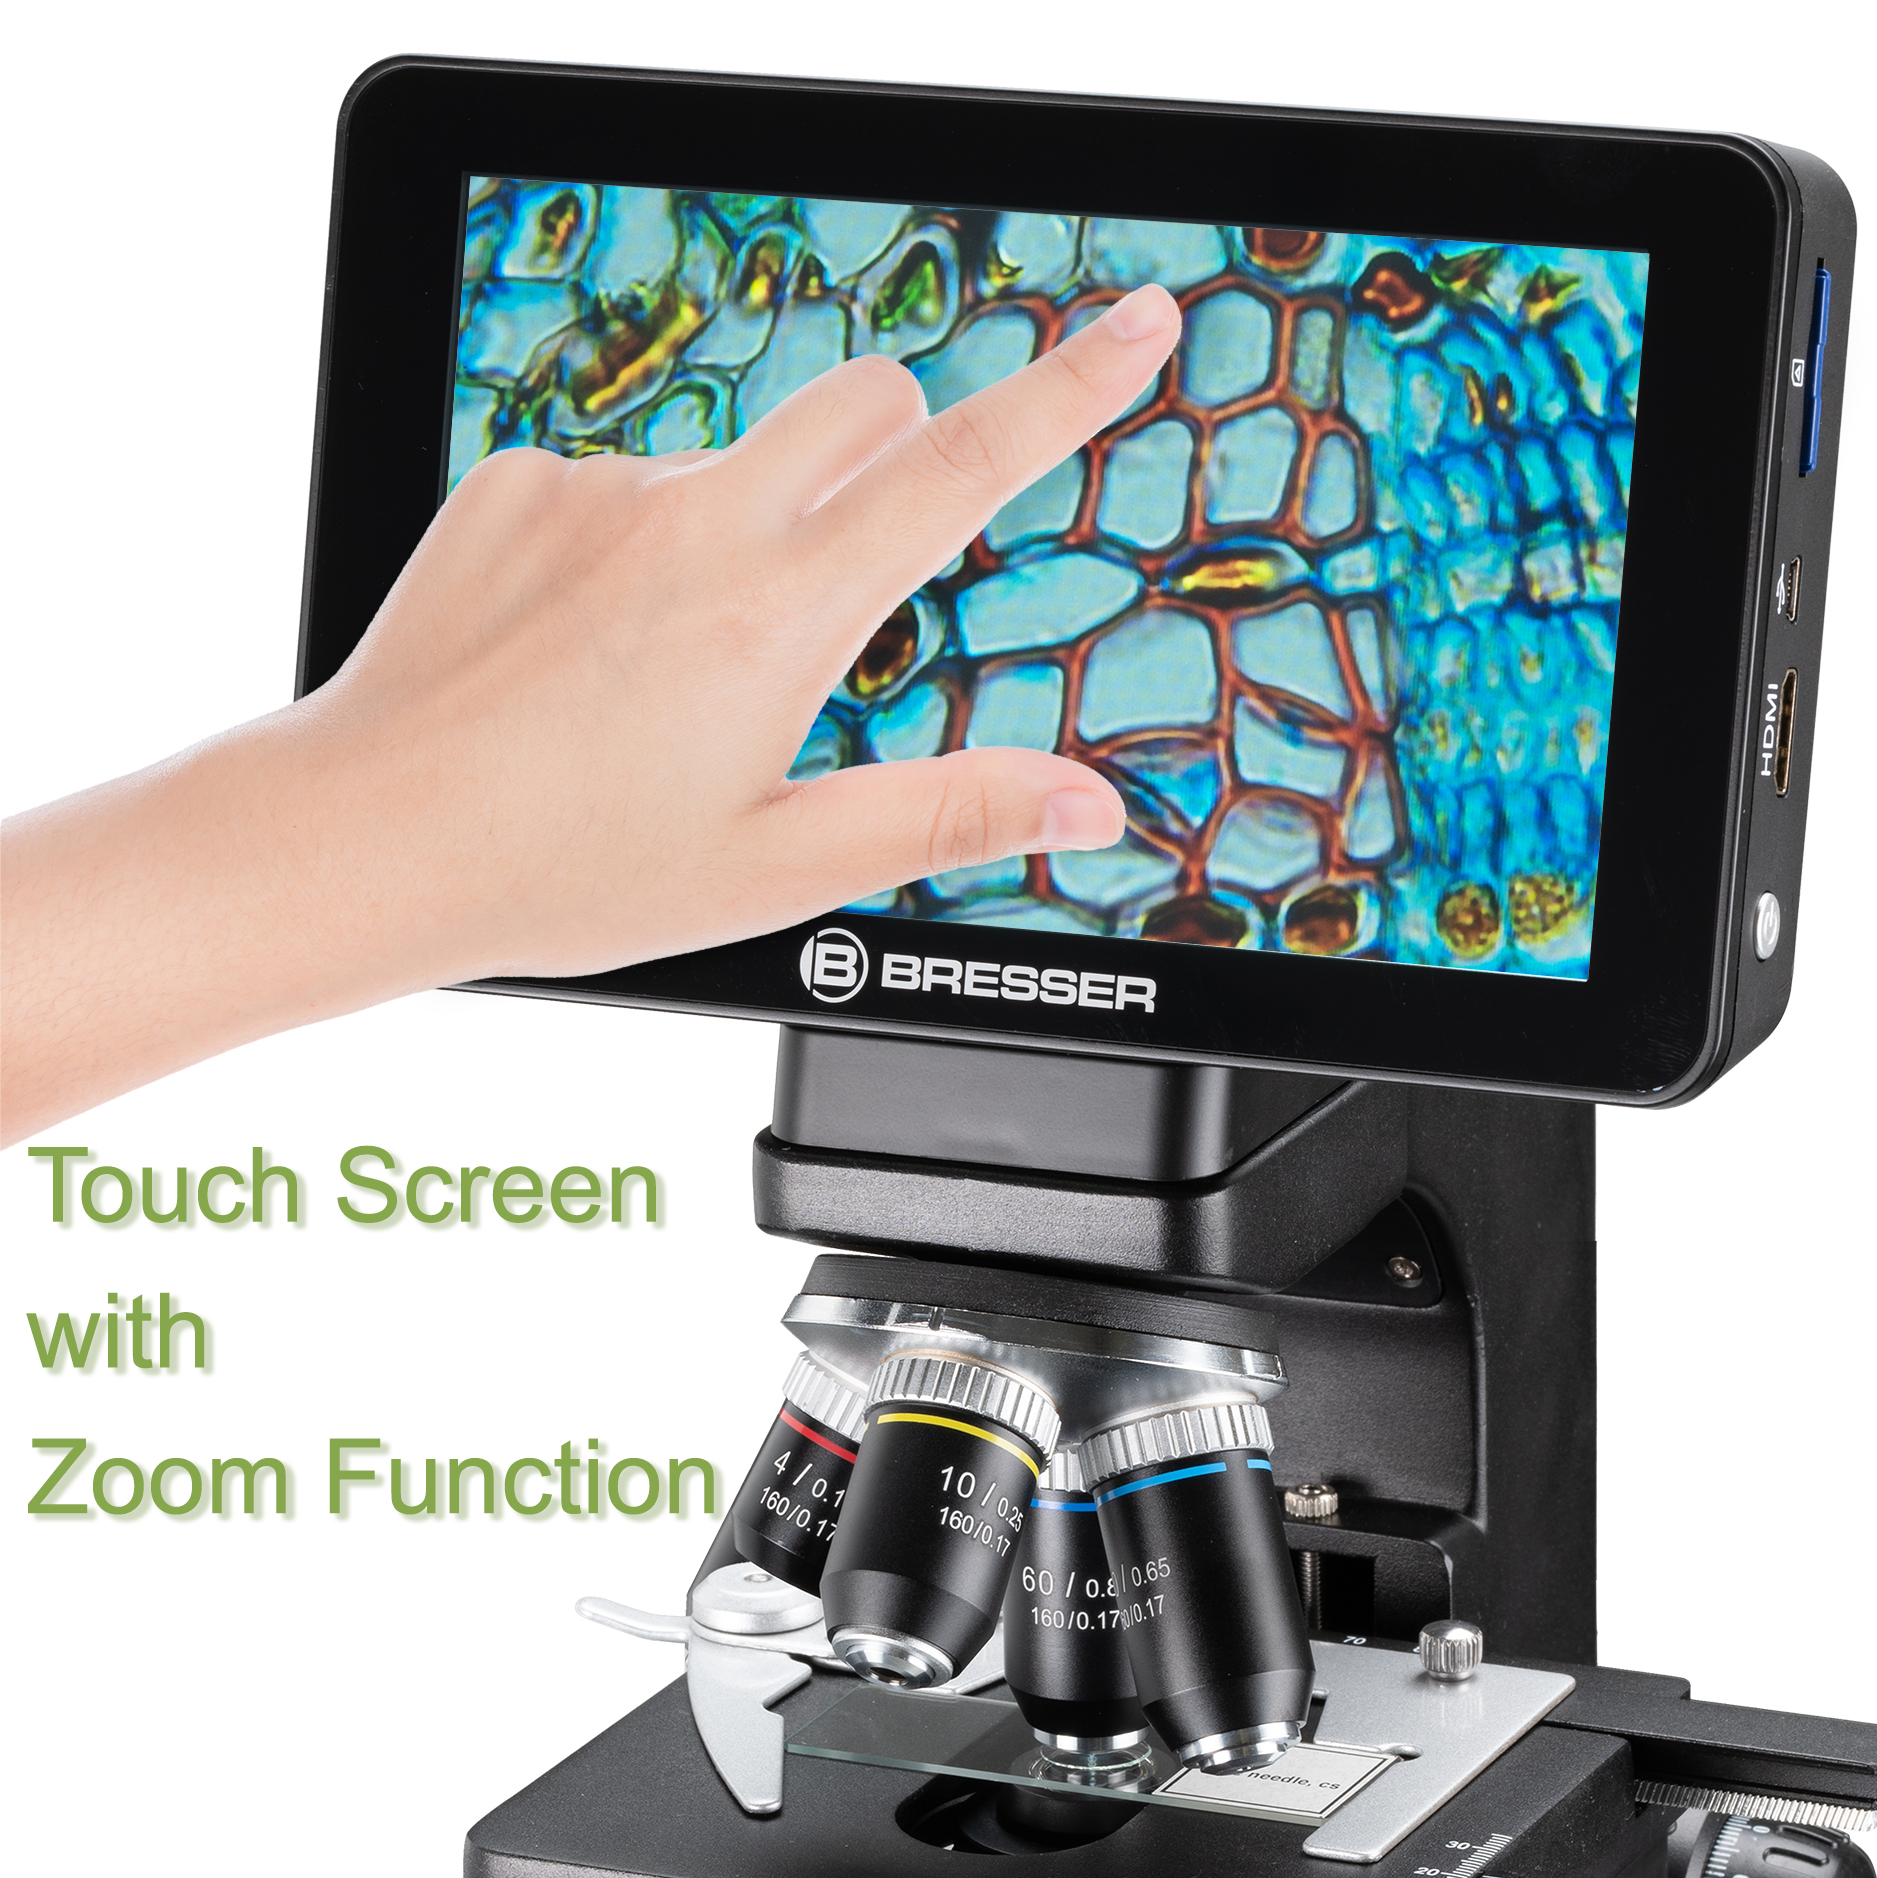   Un microscopio digitale per utenti esigenti  